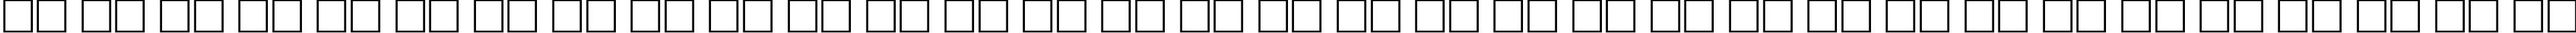 Пример написания русского алфавита шрифтом Antiqua Bold75b